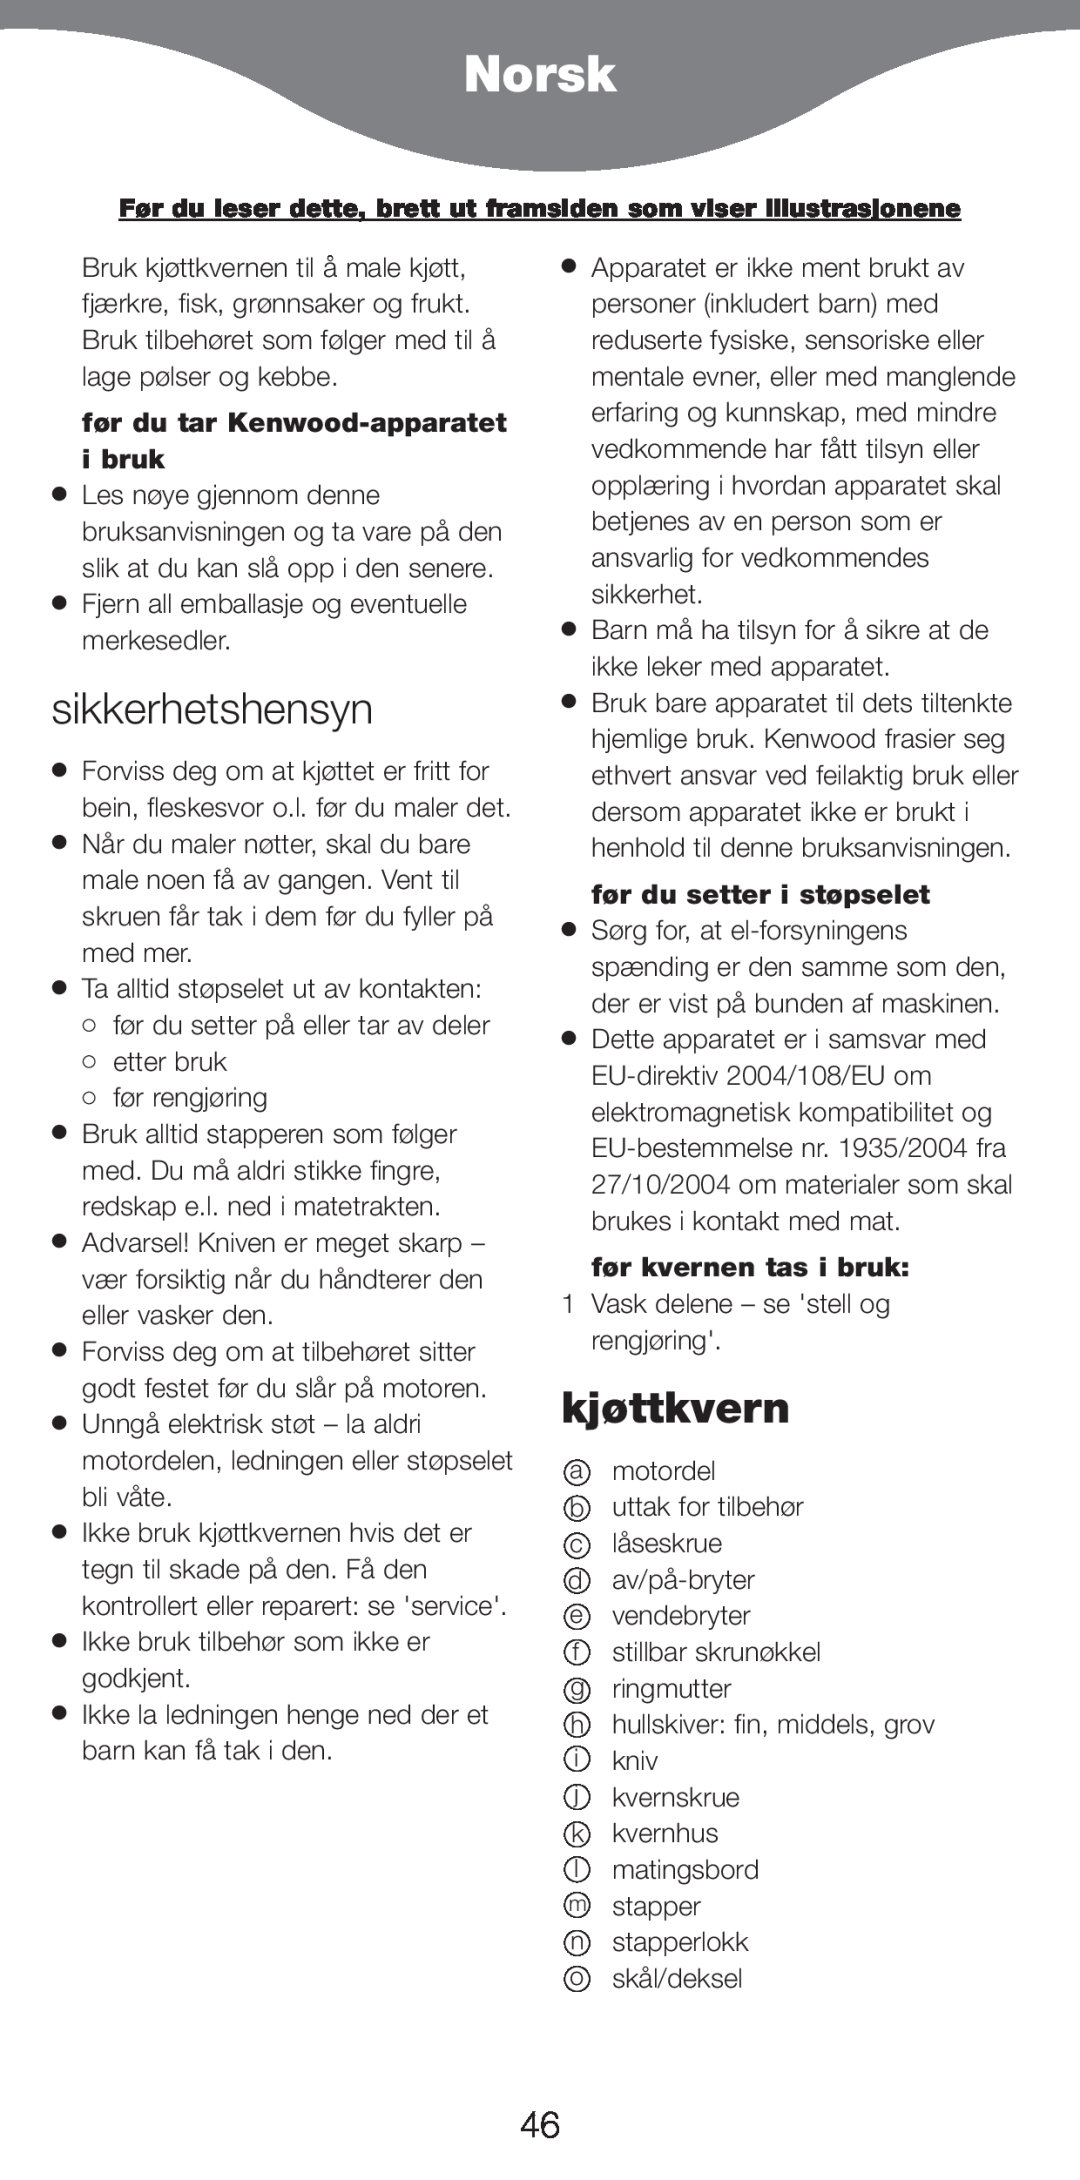 Kenwood MG510 manual Norsk, sikkerhetshensyn, kjøttkvern, før du tar Kenwood-apparatet i bruk, før du setter i støpselet 